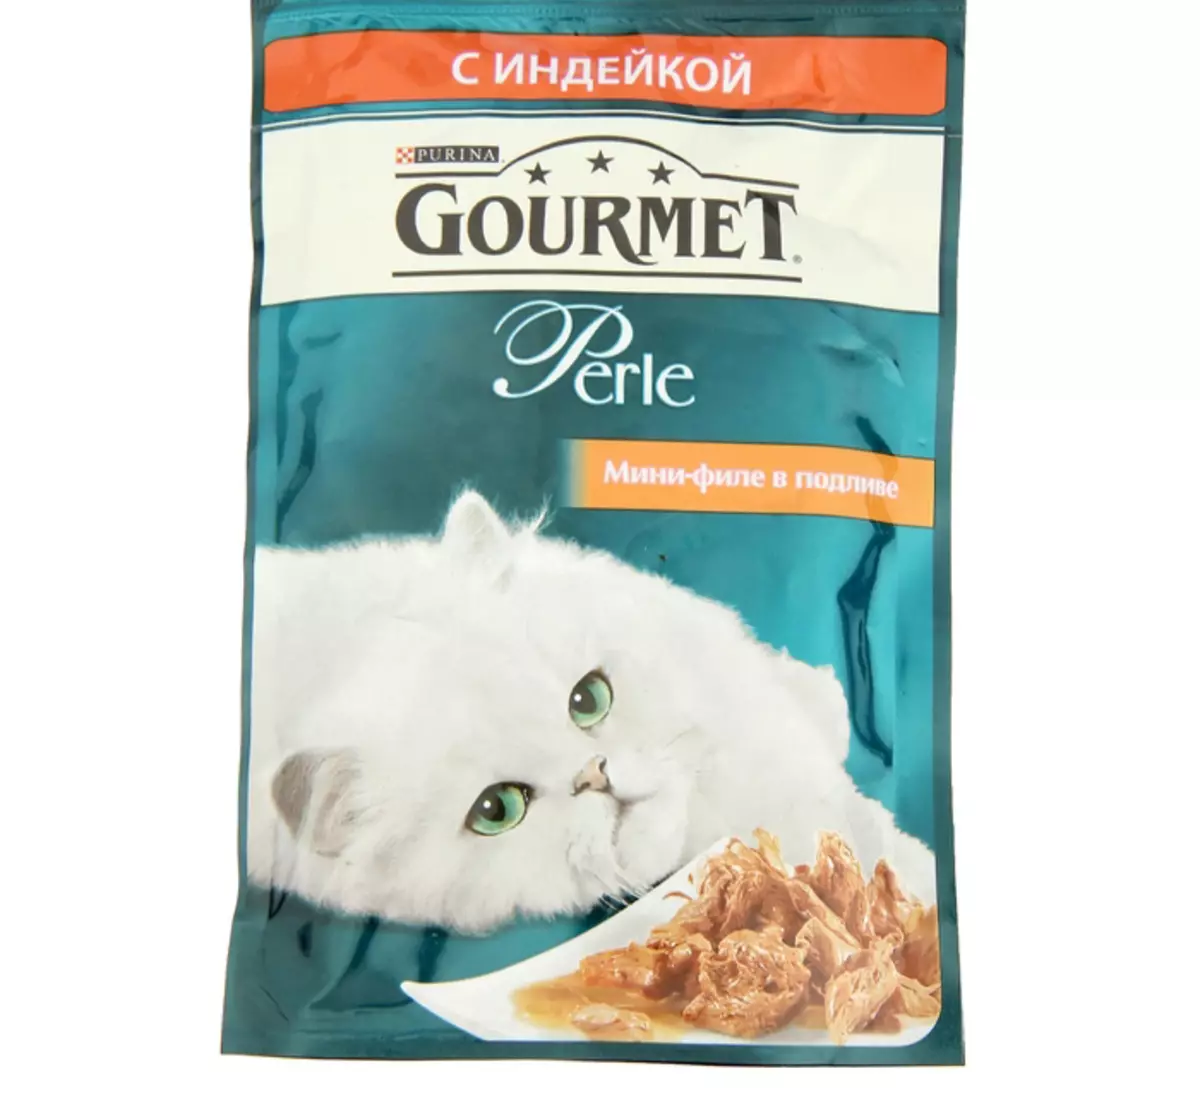 Gourmet: pakan kucing dan kucing purina, pate basah dan makanan kaleng kucing lainnya, komposisi mereka, ulasan 22711_32